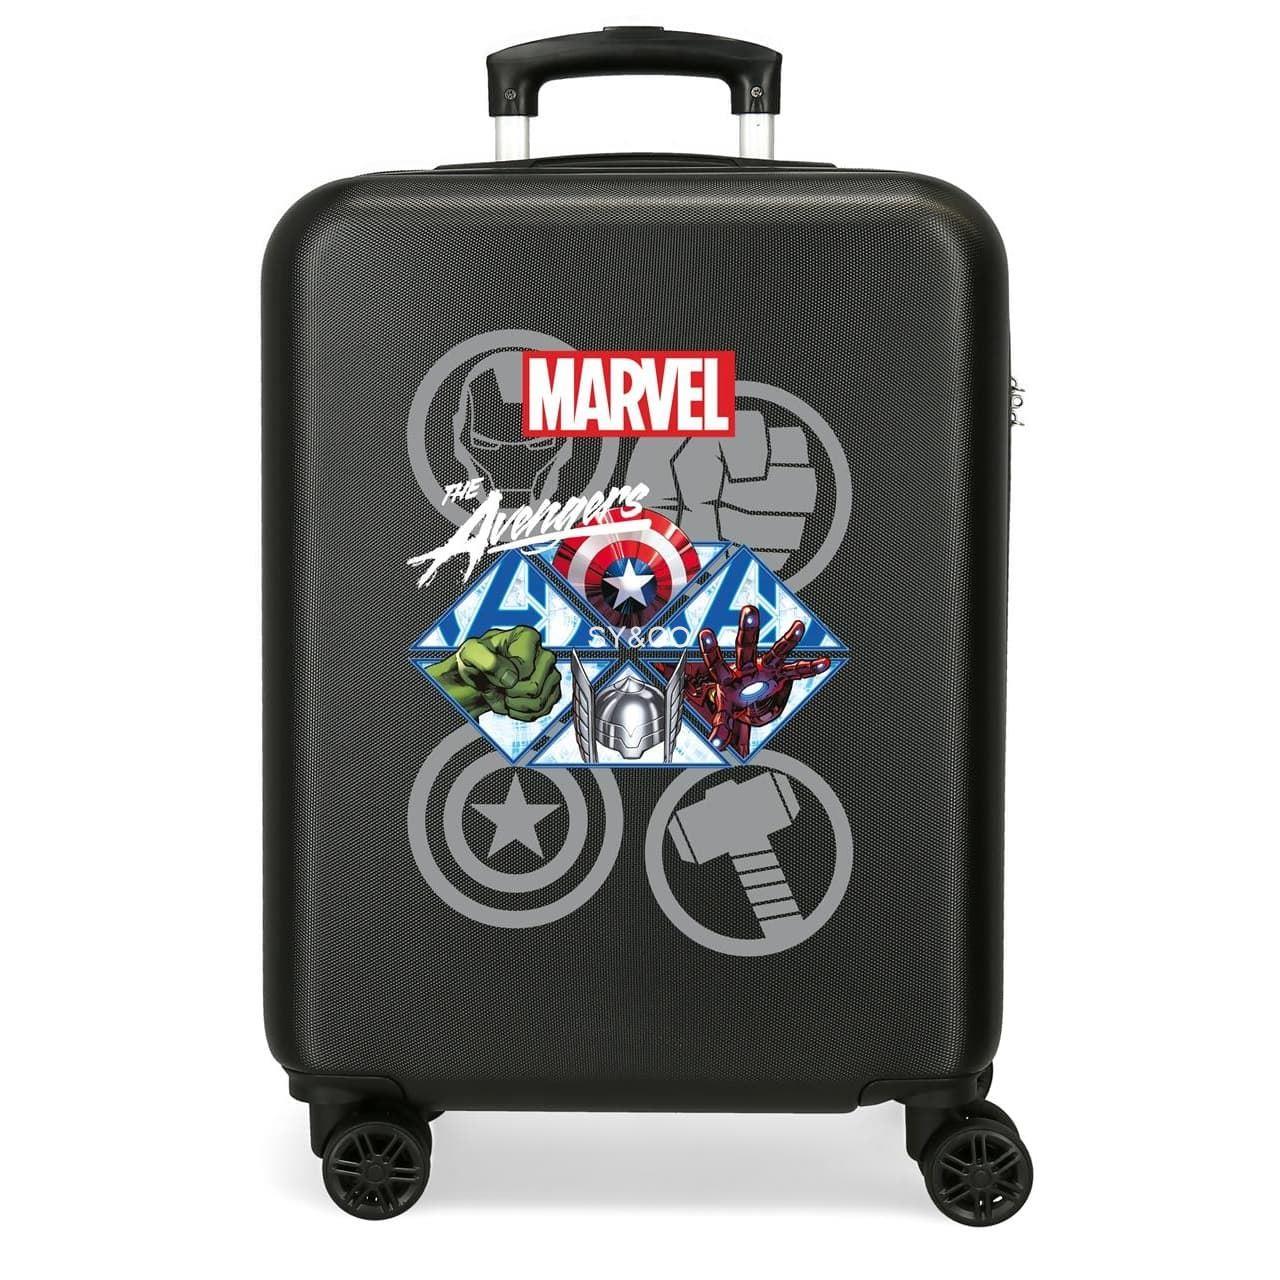 Maleta de cabina infantil Avengers Heroes Marvel - Imagen 1